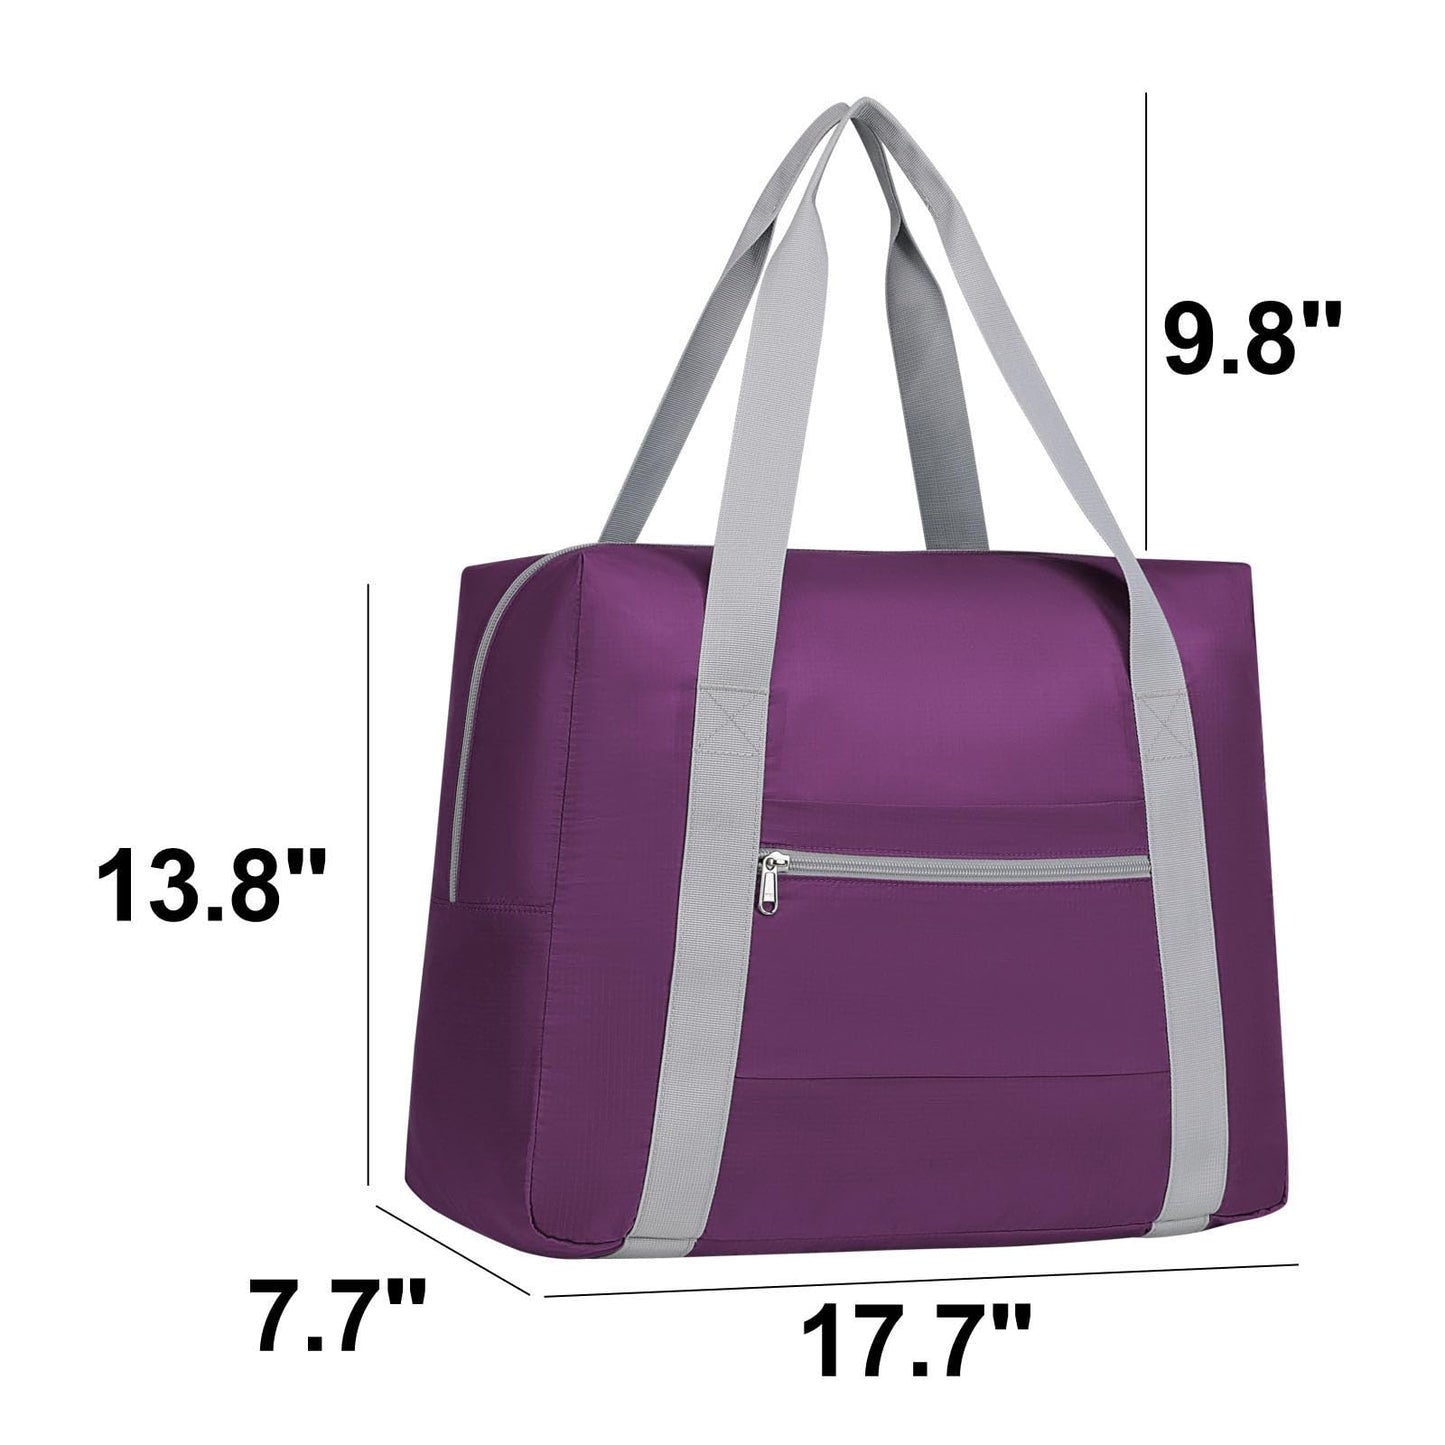 Personal Item Bag